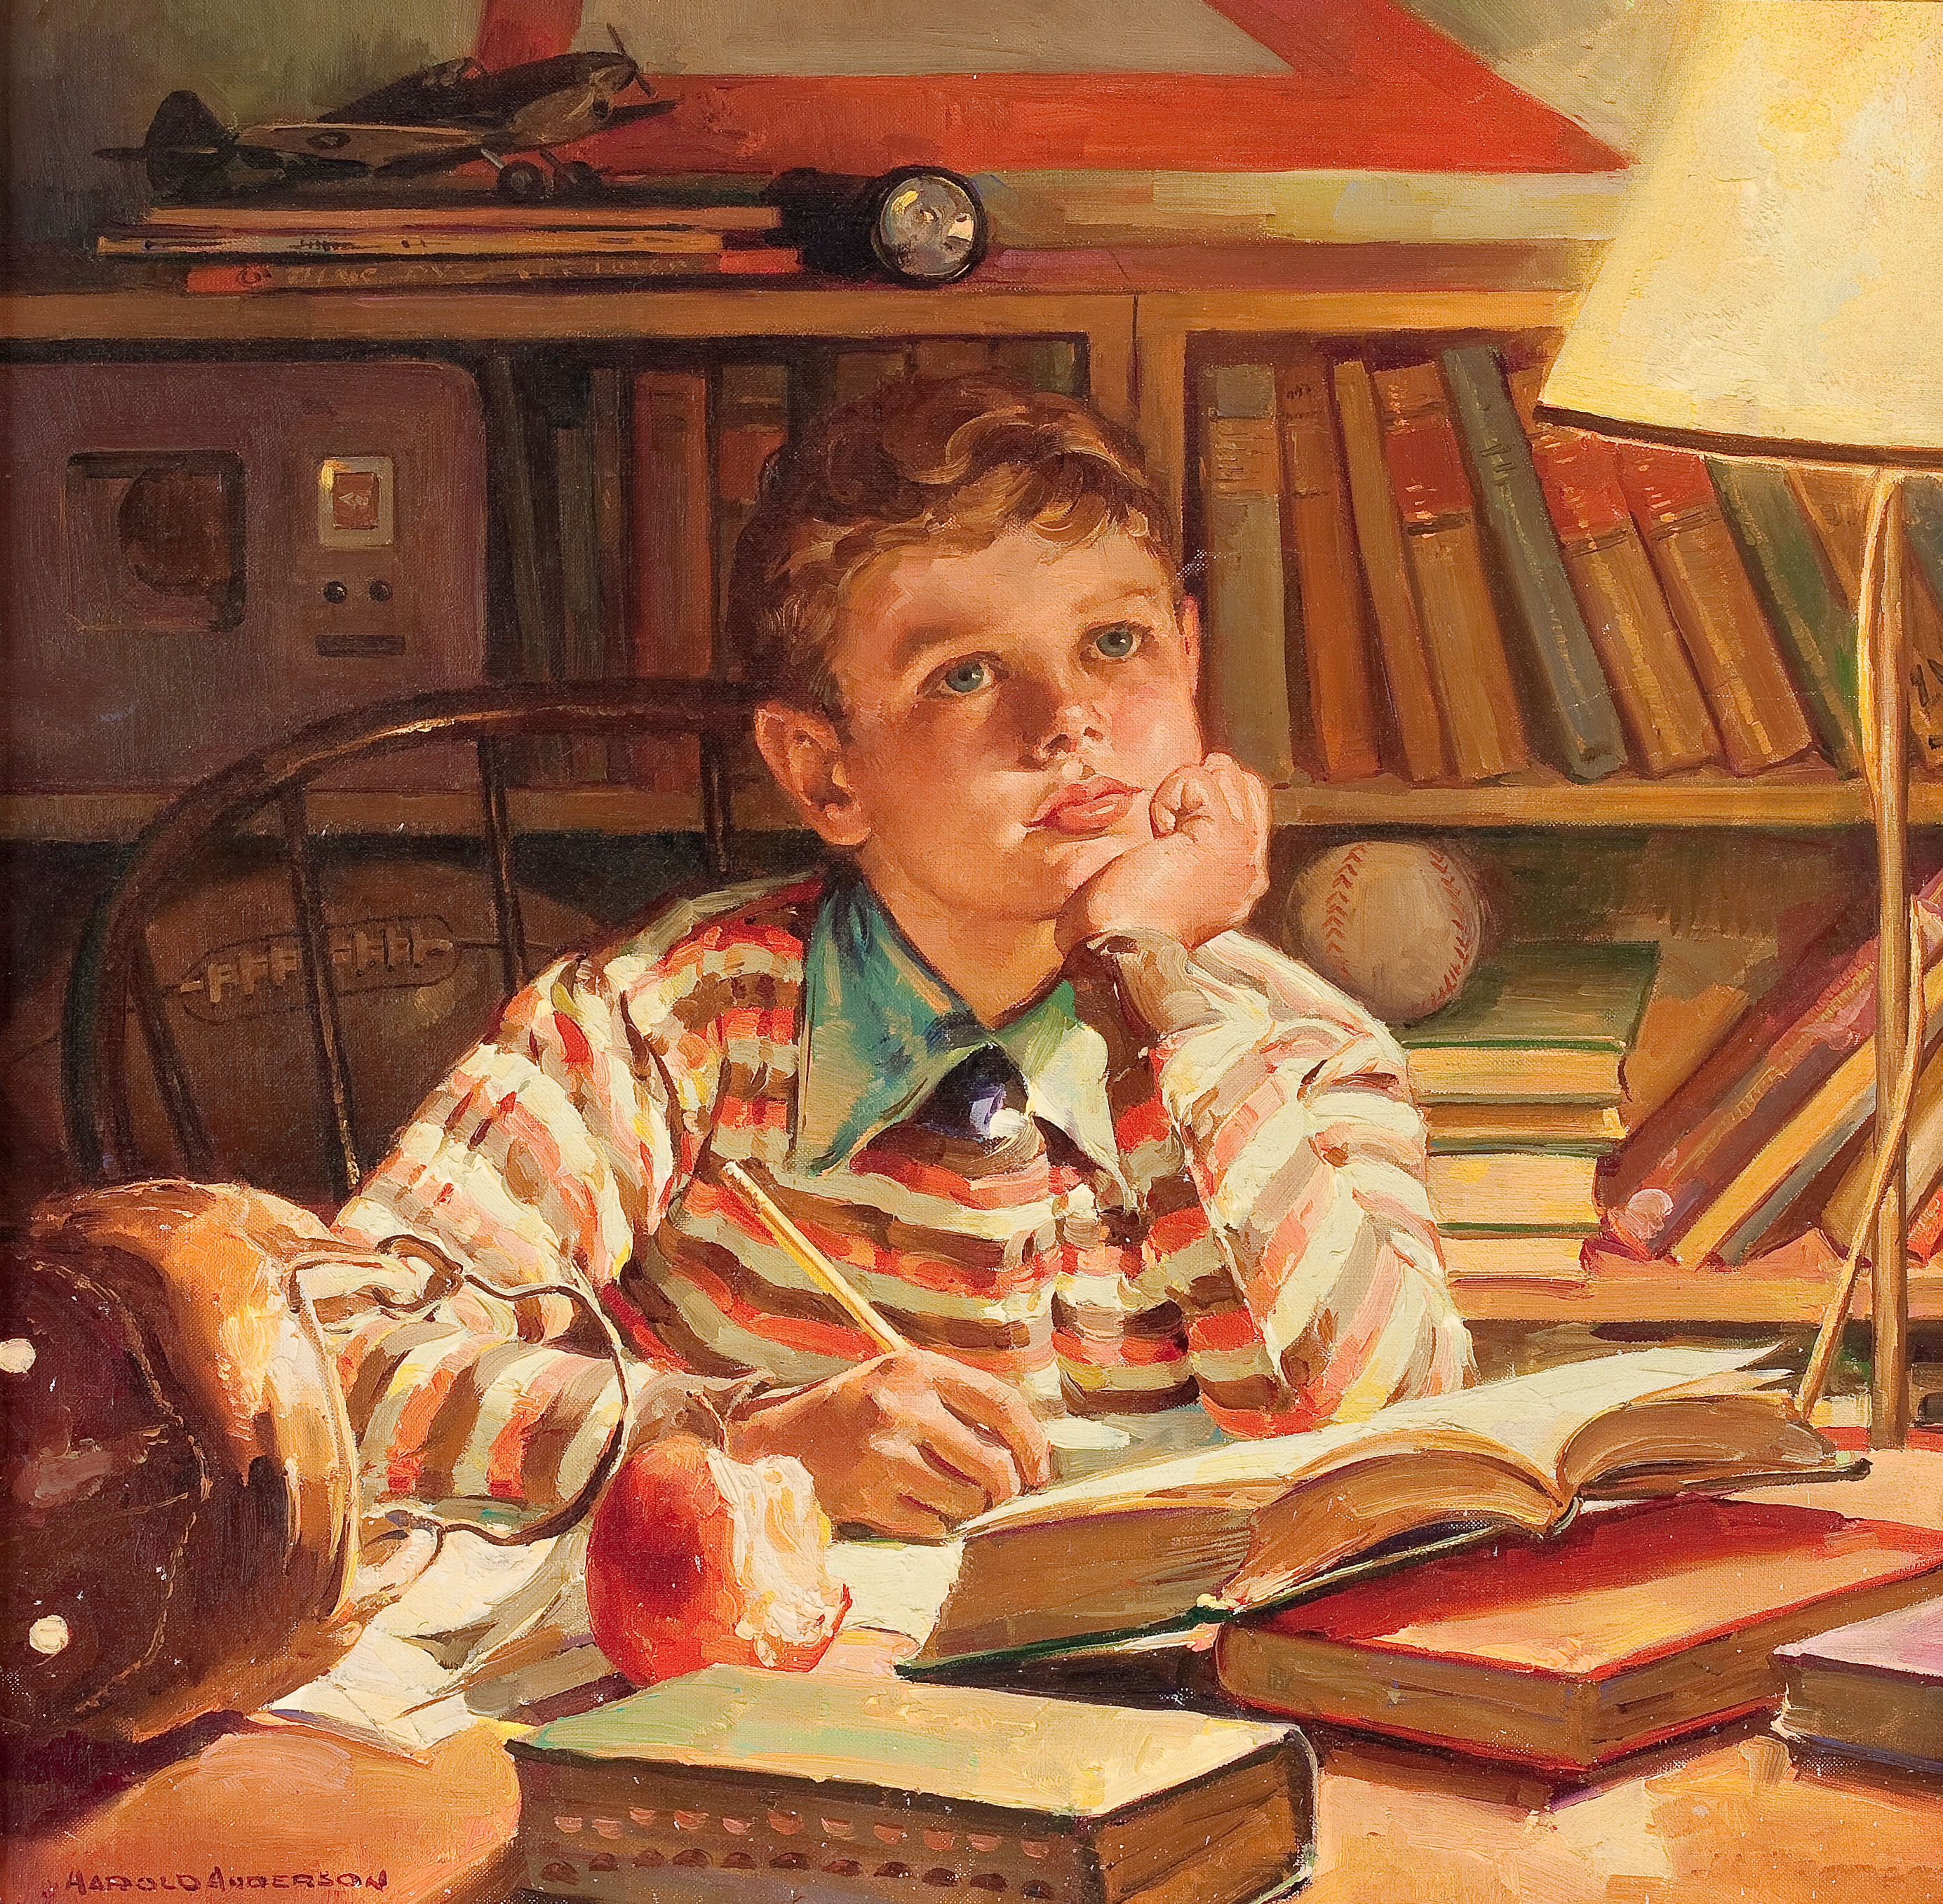 Мальчик учит стихотворение. Гарольд Андерсон. Харольд Андерсон художник. Иллюстратор Гарольд Андерсон. Американский художник Harold Anderson.